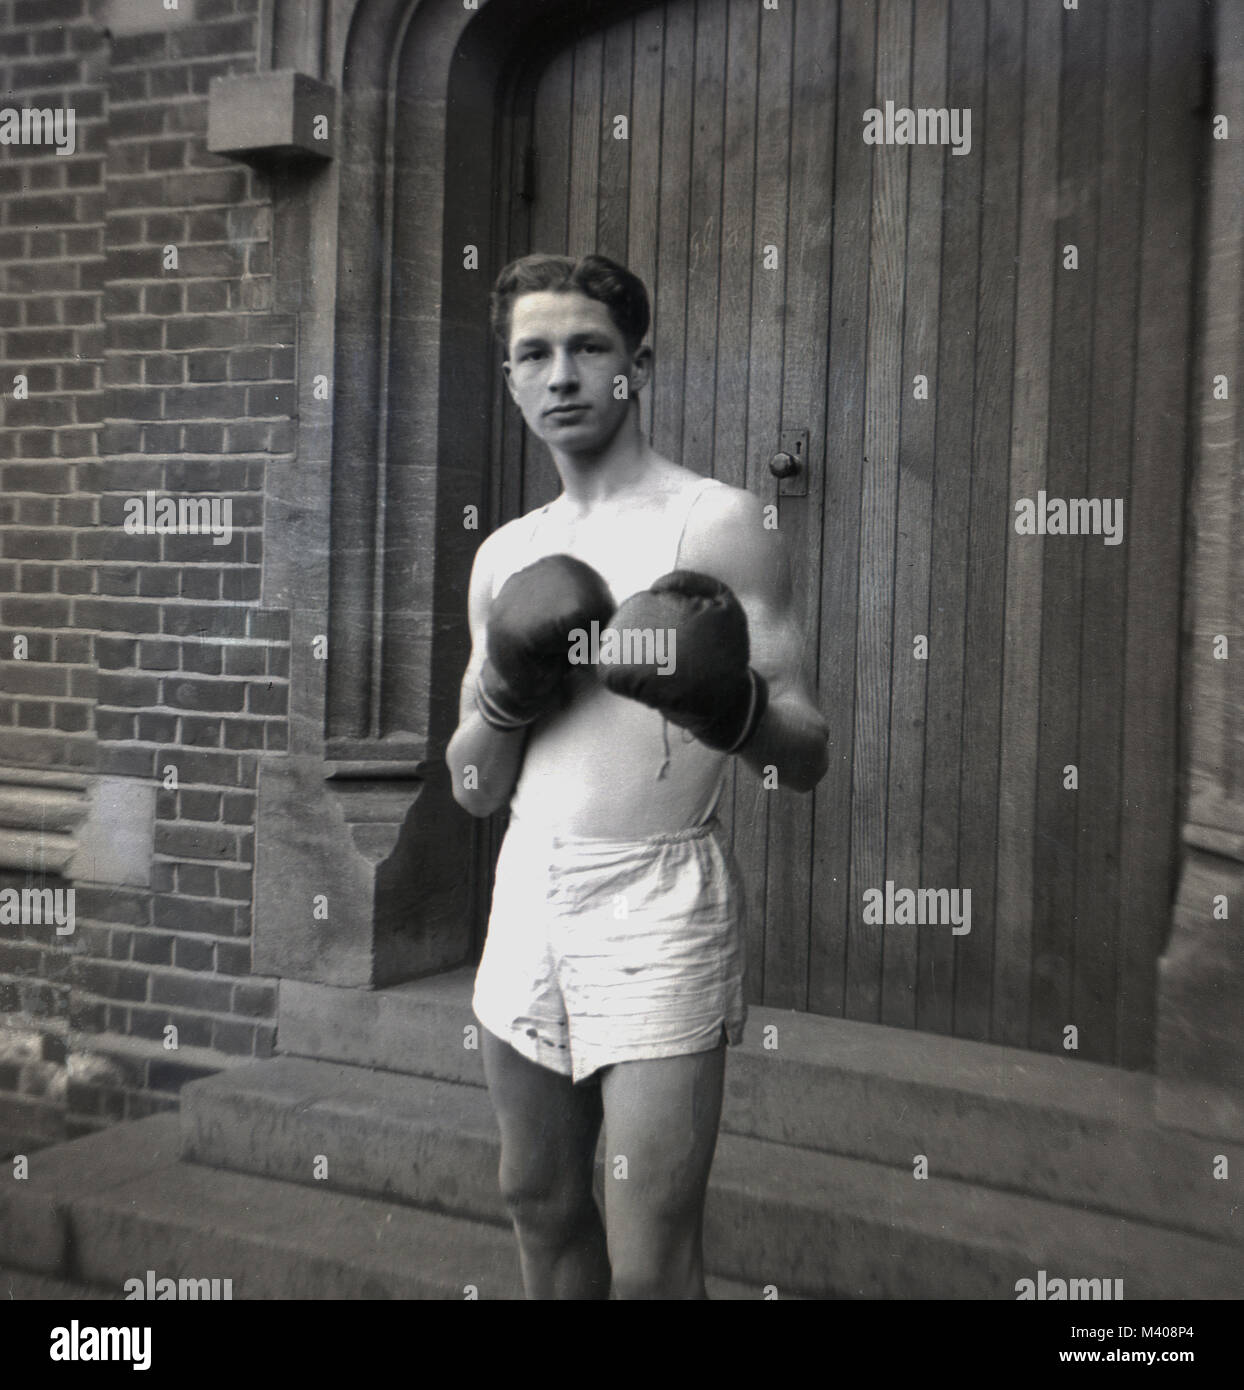 1950, historiques...le "noble art"...un jeune élève de l'école d'une grande école en bois porte à Bancrofts, Woodford Green, Angleterre, Royaume-Uni, portant une veste de sport et des courts-circuits et des gants de boxe et de prendre une pose ou de frappe monétaire. La boxe était un sport enseigné tant en état et de public (écoles privées) en ce moment, et en dehors de la santé et forme physique, les élèves ont appris que les combats ont eu lieu dans un ring, pas sur une rue. Banque D'Images